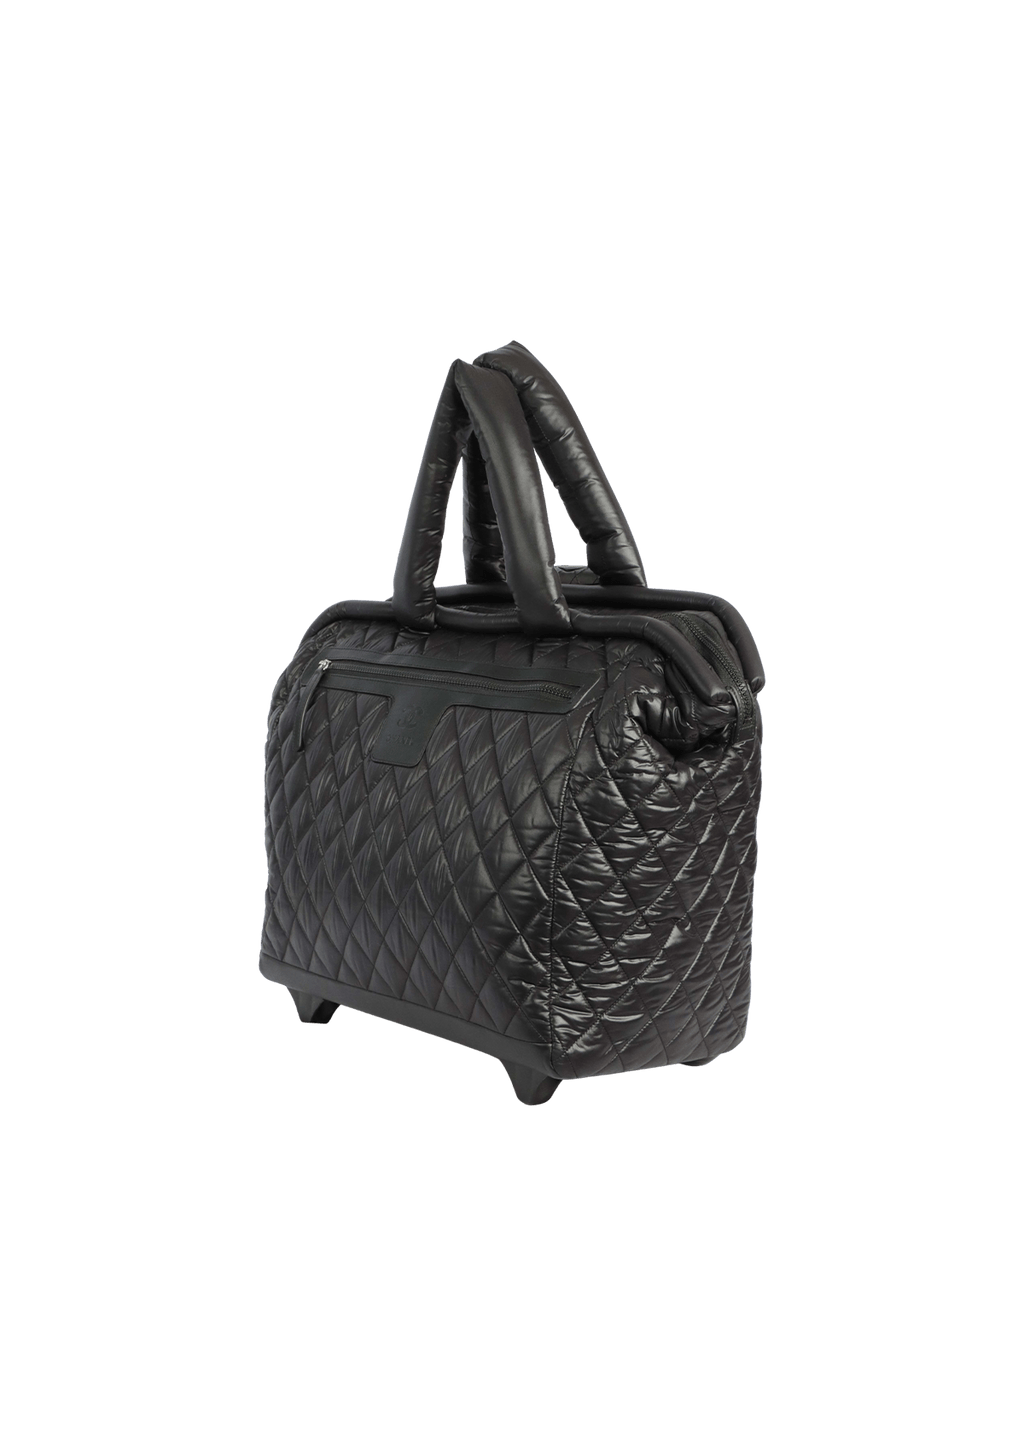 Chanel Coco Cocoon Handbag Collection 